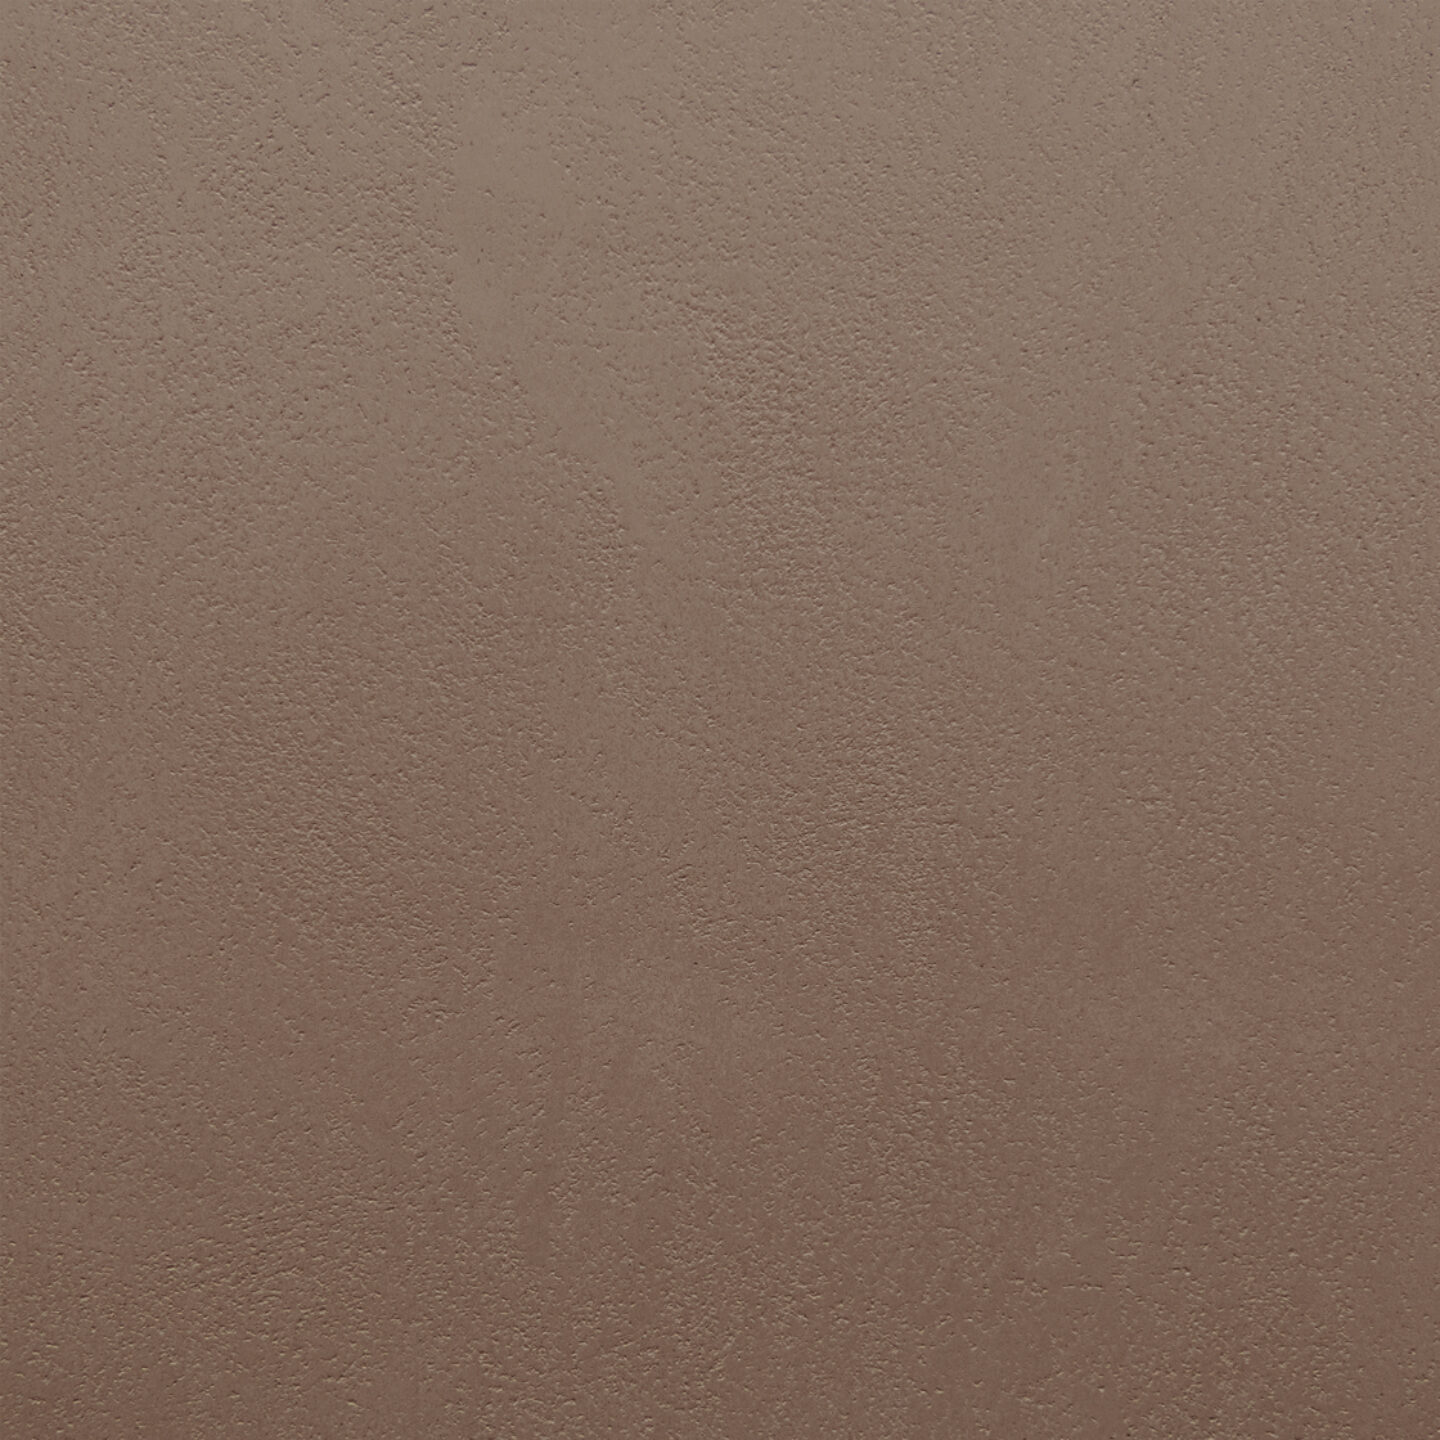 Armourcoat leatherstone exterior polished plaster finish - 33